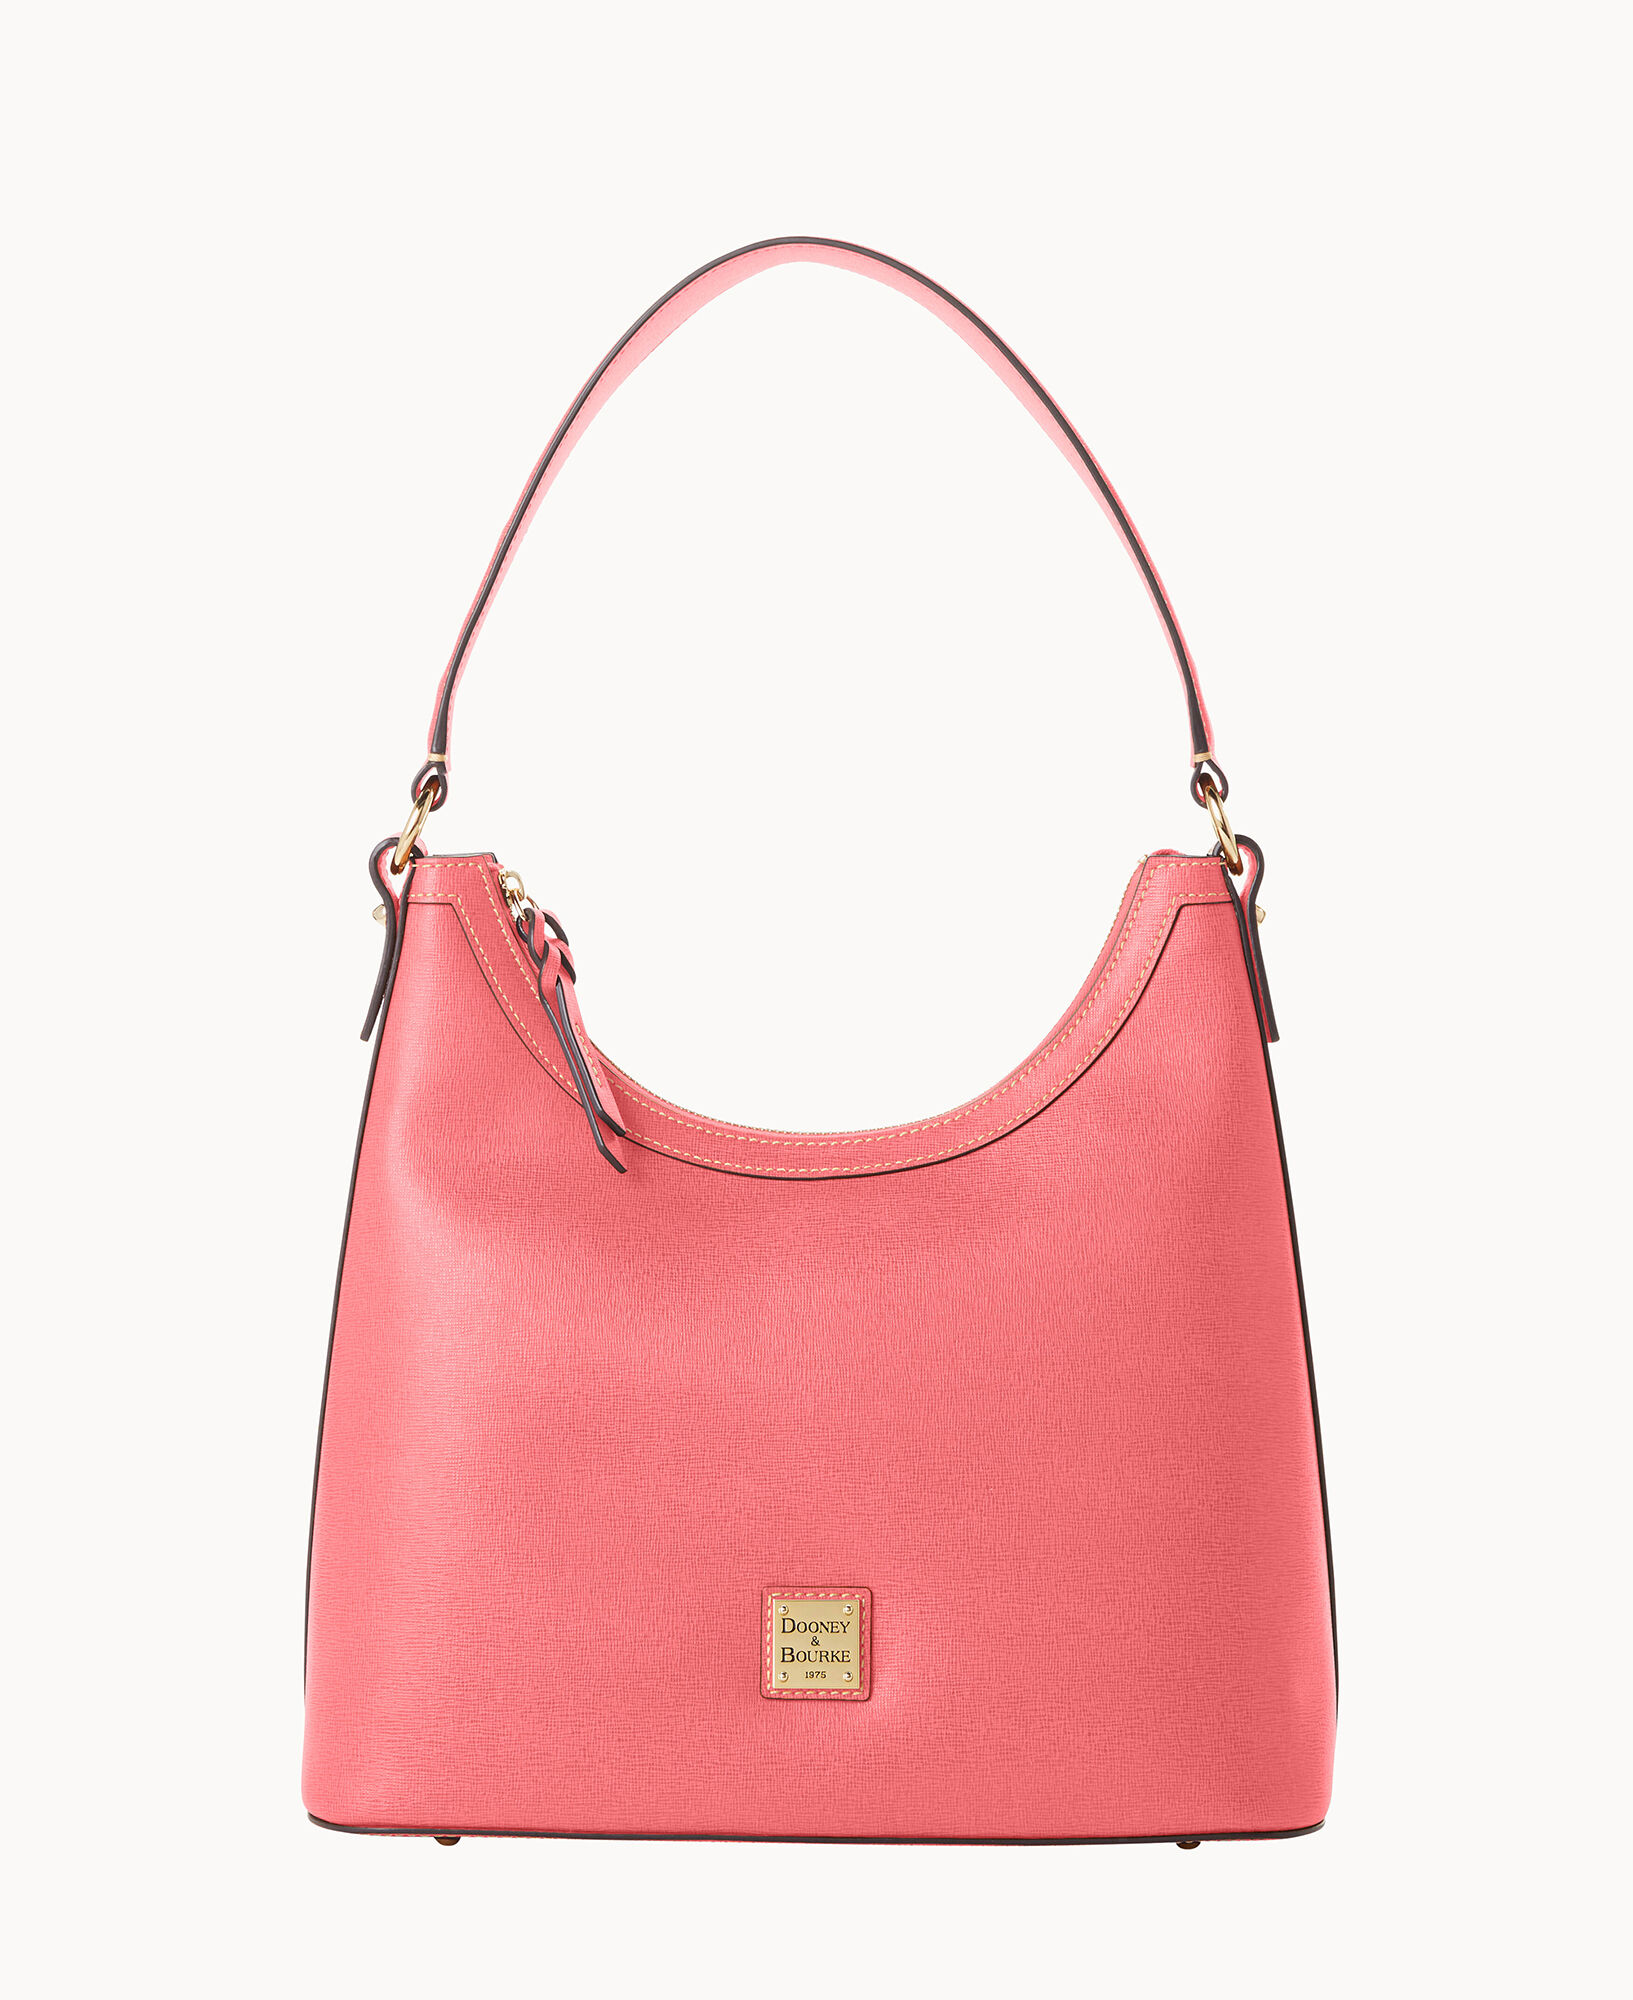 Dooney & Bourke Saffiano Shopper Handbags Sky Blue : One Size